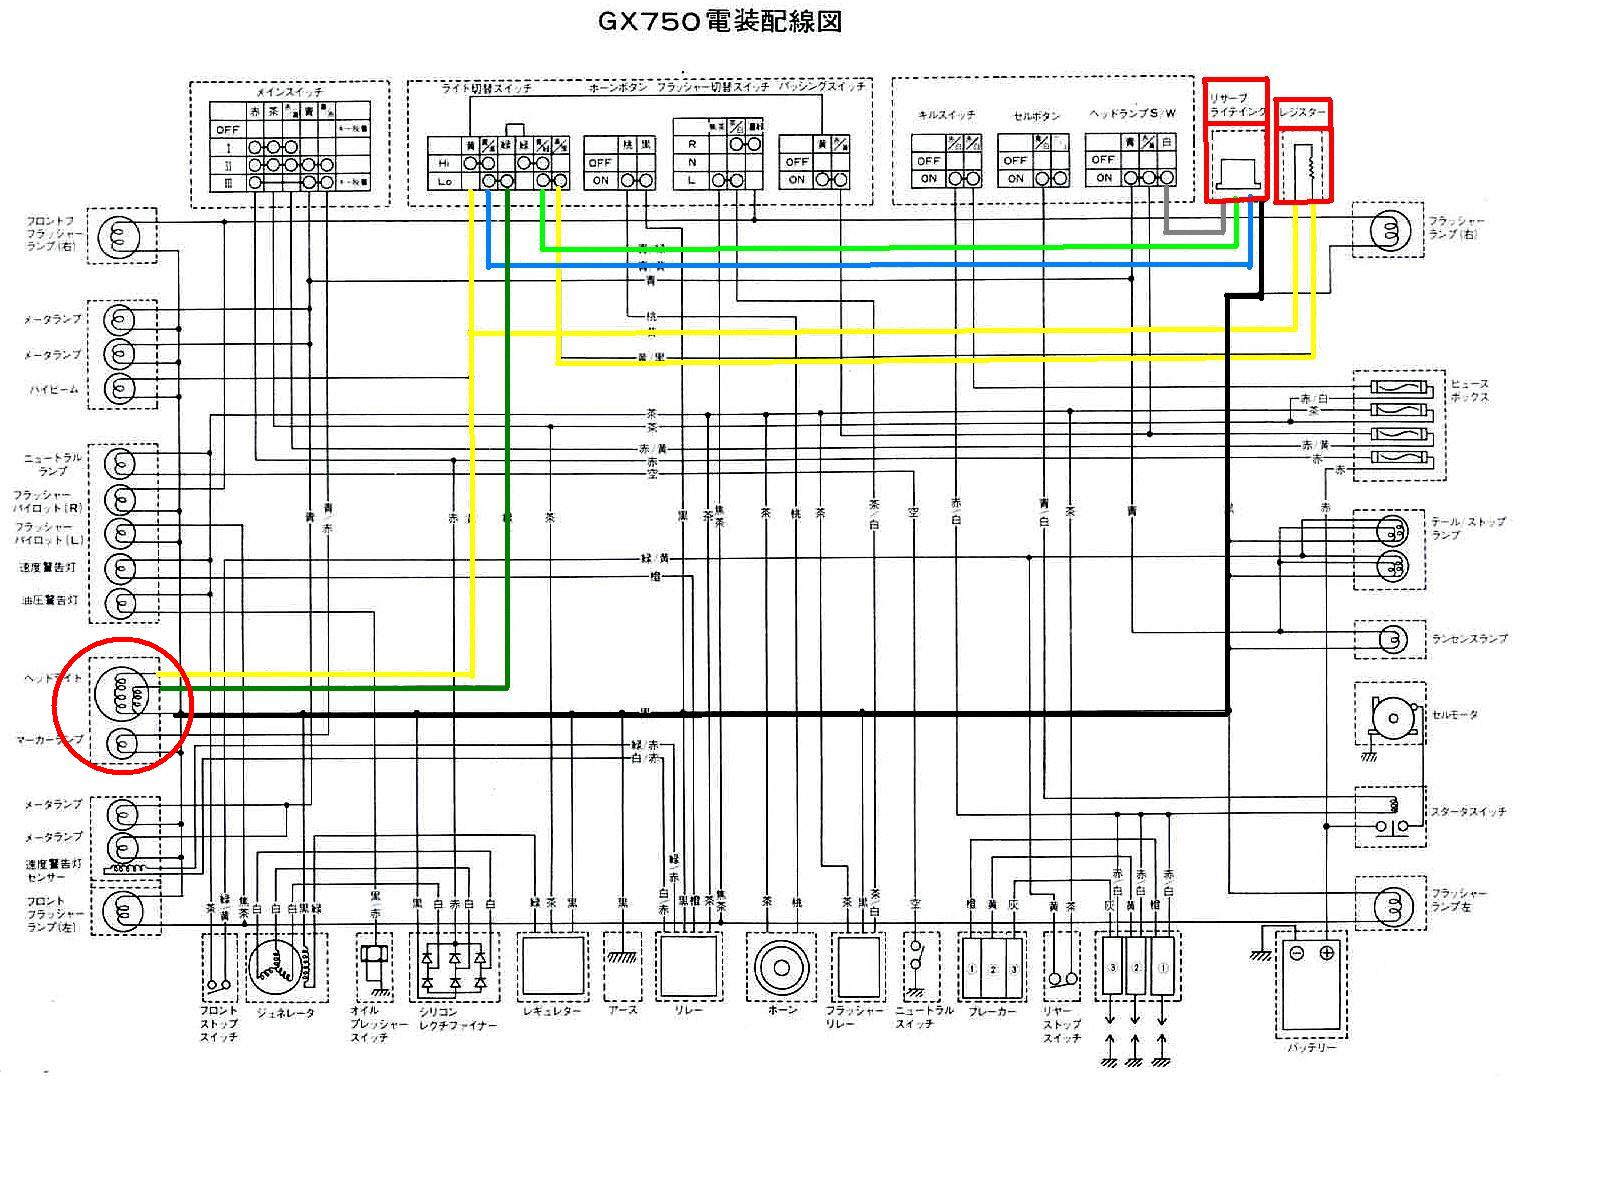 日曜の朝にはYAMAHAに乗ろう cb400f wiring diagram pdf 